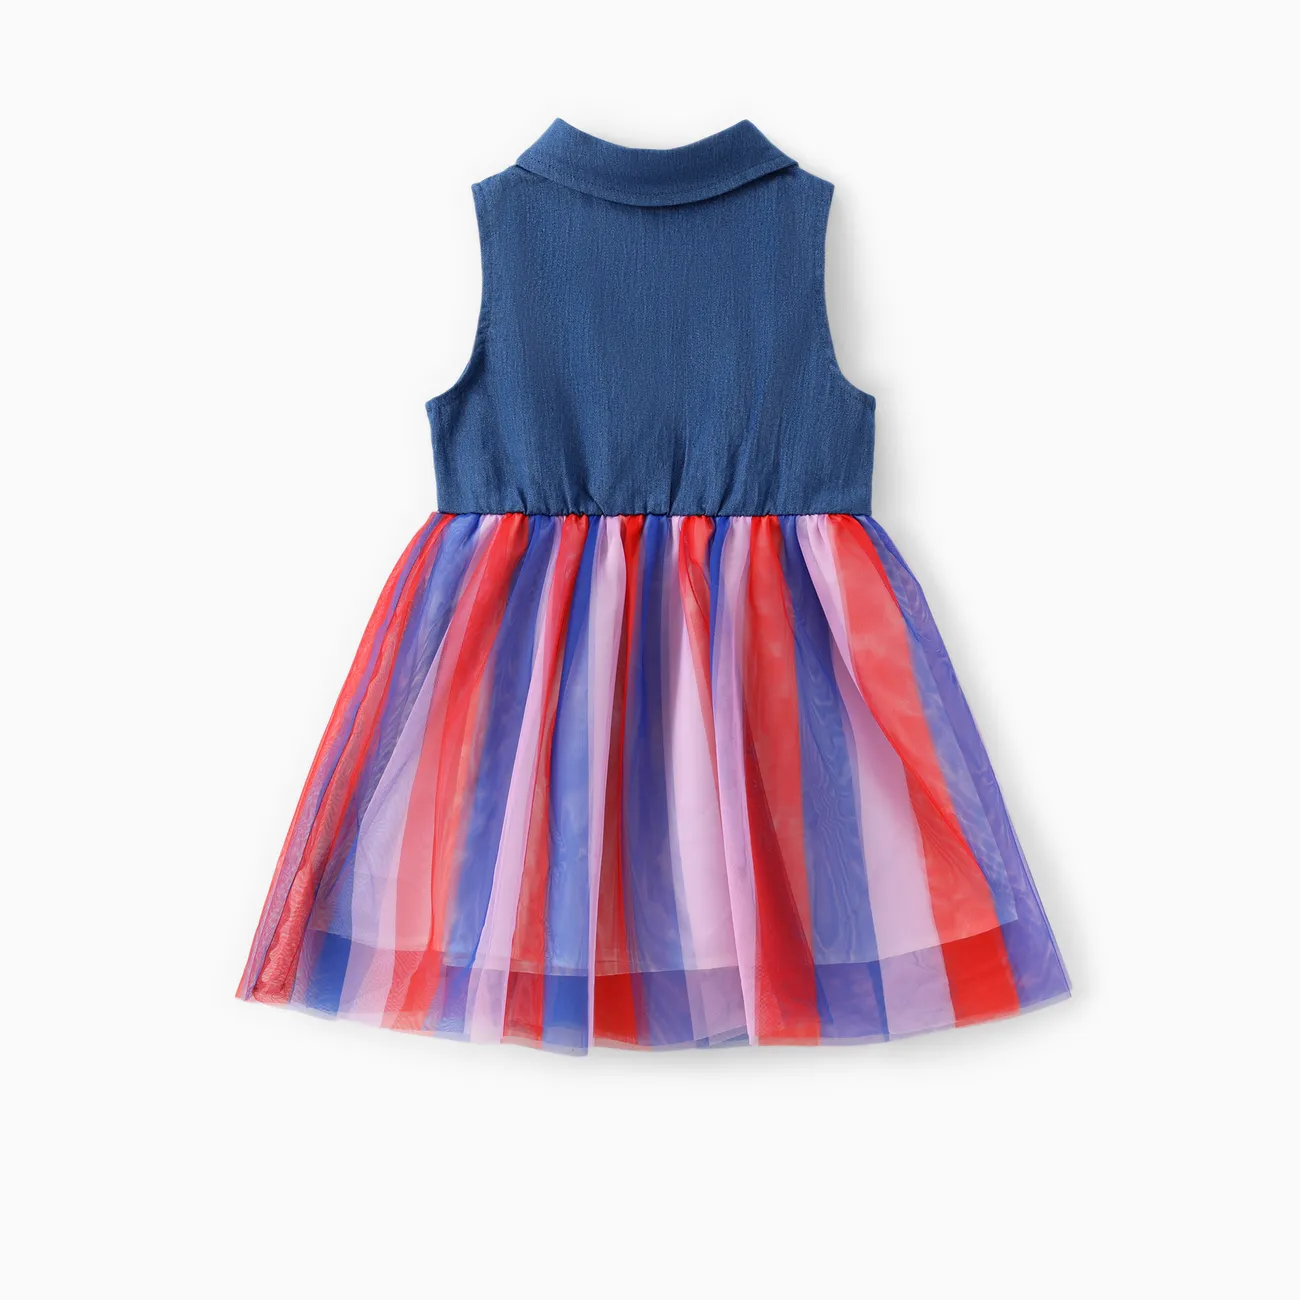 La Pat’ Patrouille Fête Nationale Enfant en bas âge Fille Couture de tissus Enfantin Chien Robes Bleu big image 1